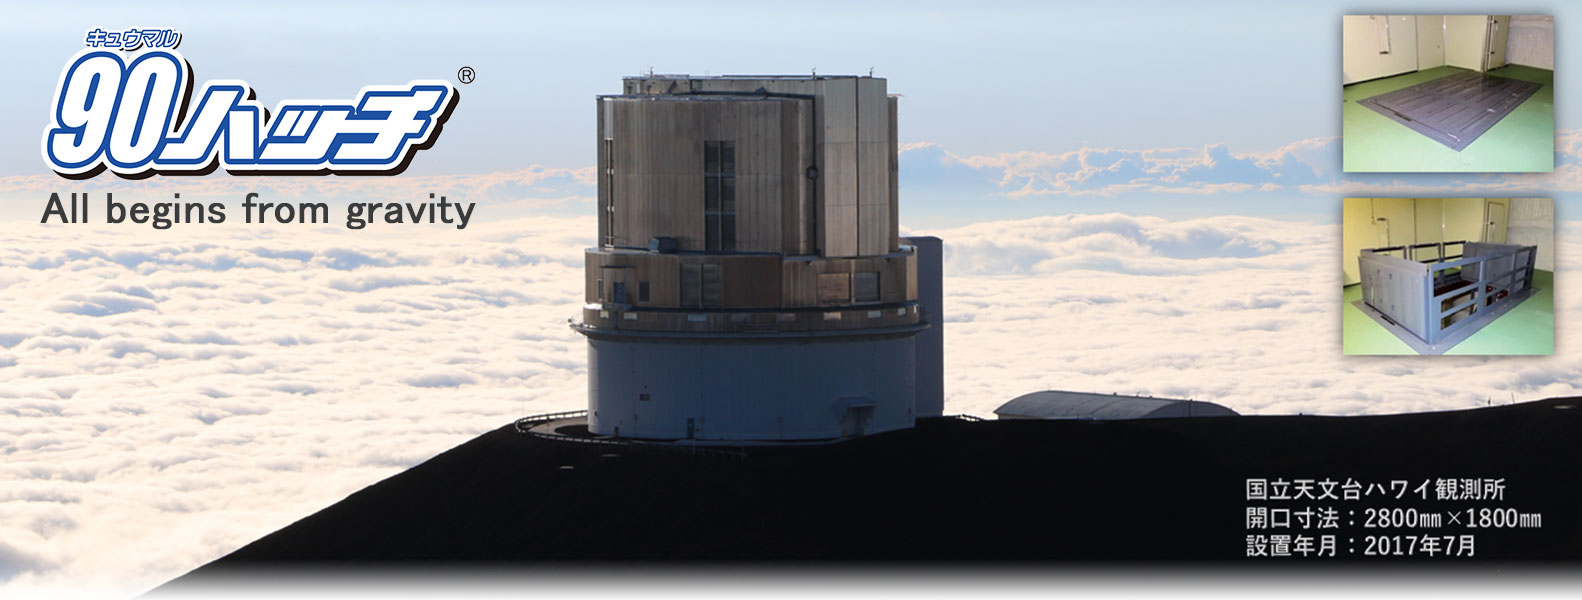 国立天文台ハワイ観測所